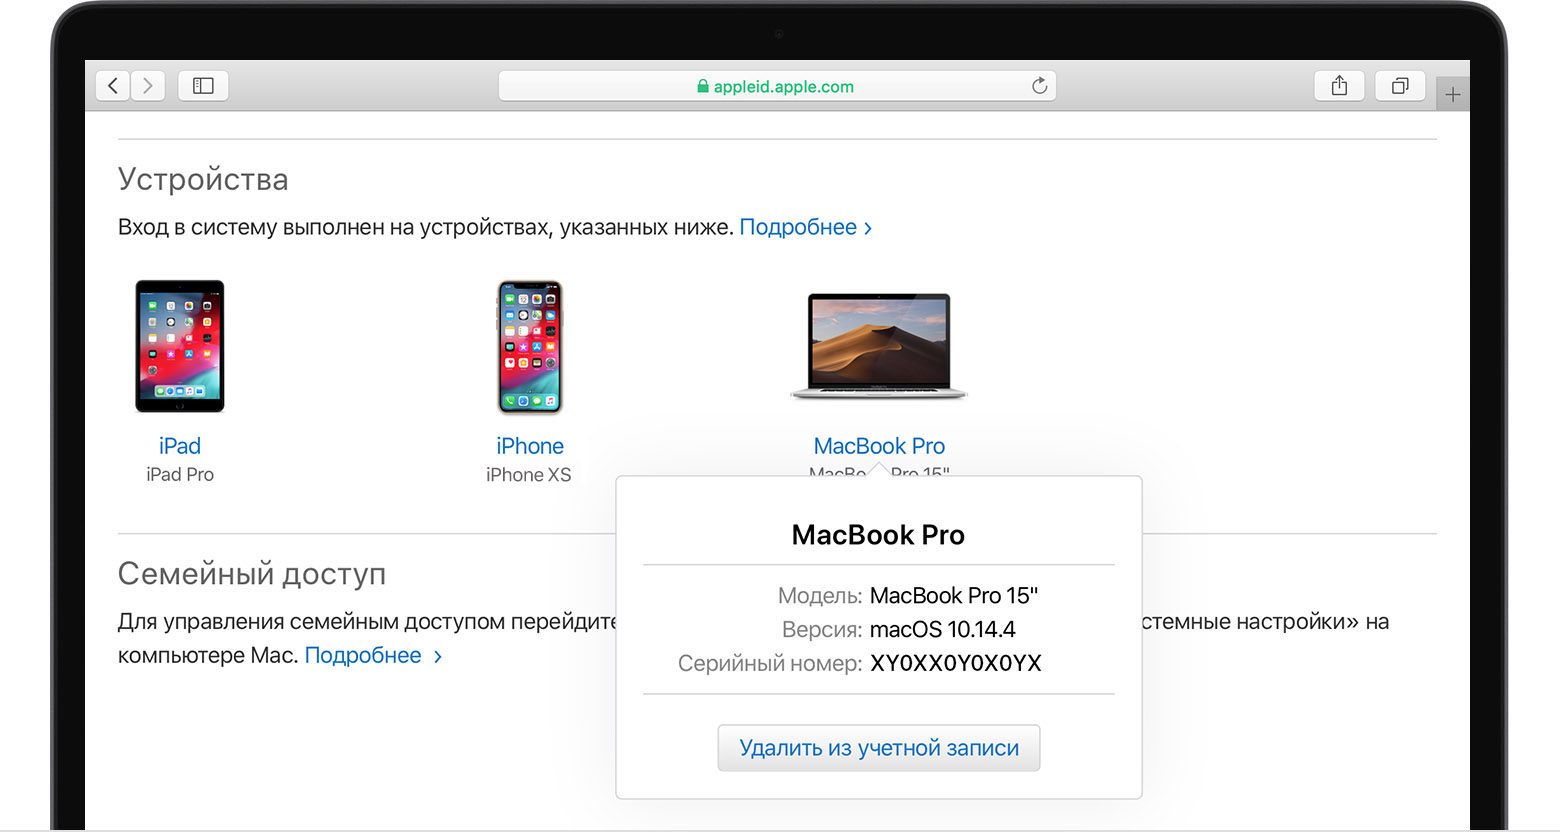 Экран Mac, на котором отображаются зарегистрированные устройства и раздел «Оплата и доставка»